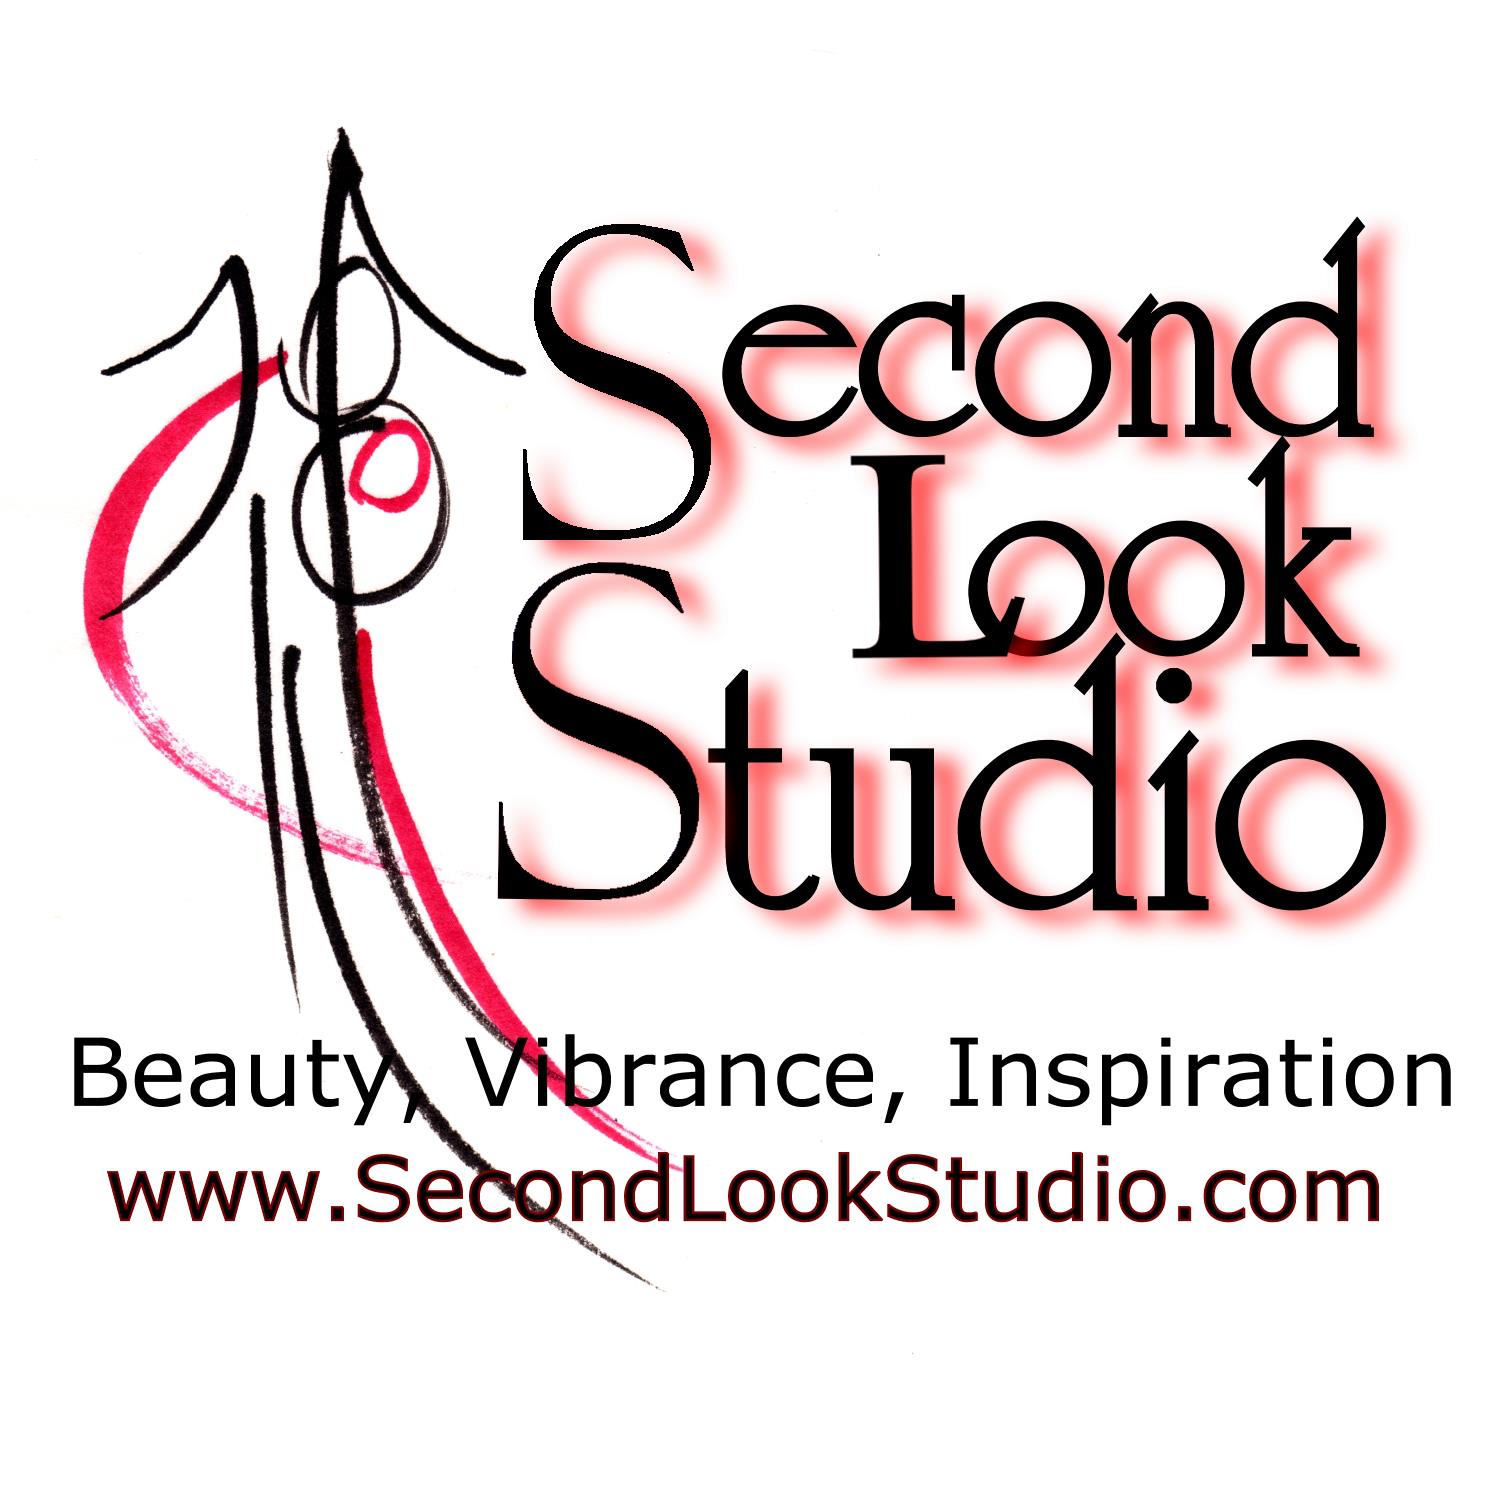 Second Look Studio